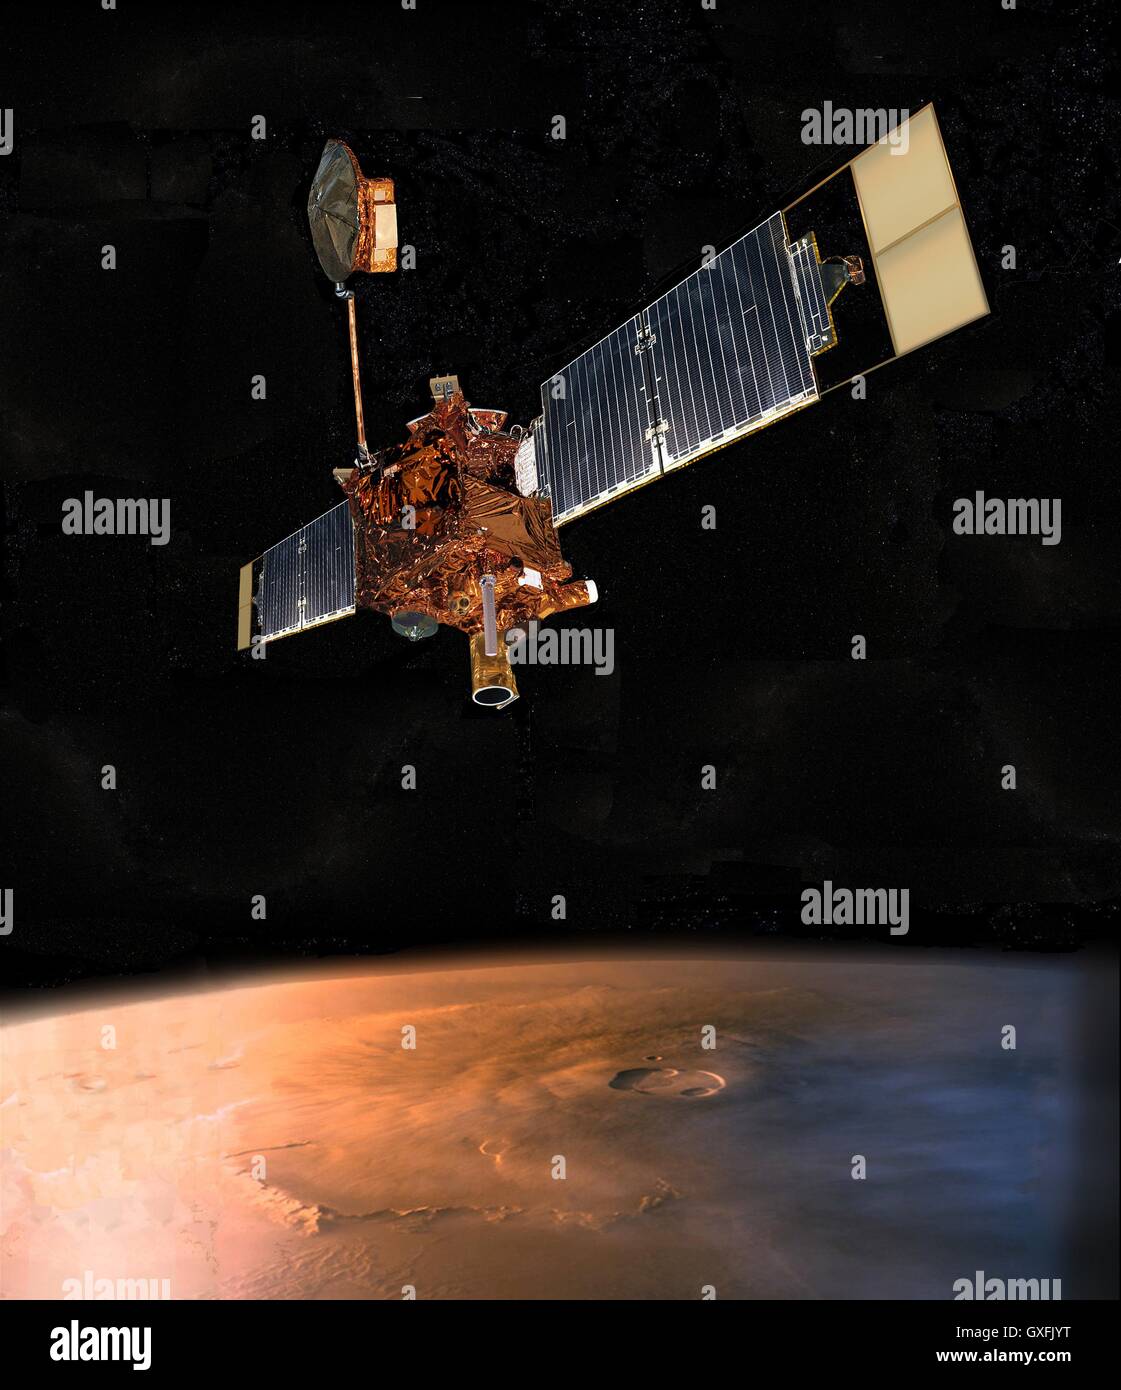 Un concept de l'artistes digital Mars Global Surveyor de la NASA volant au-dessus de Mars le 11 septembre 1997. Conçu par la NASA Jet Propulsion Laboratory, l'orbiteur américain sonde automatique a été lancé en 1996 pour une mission de cartographie de Programme d'exploration de Mars. Banque D'Images